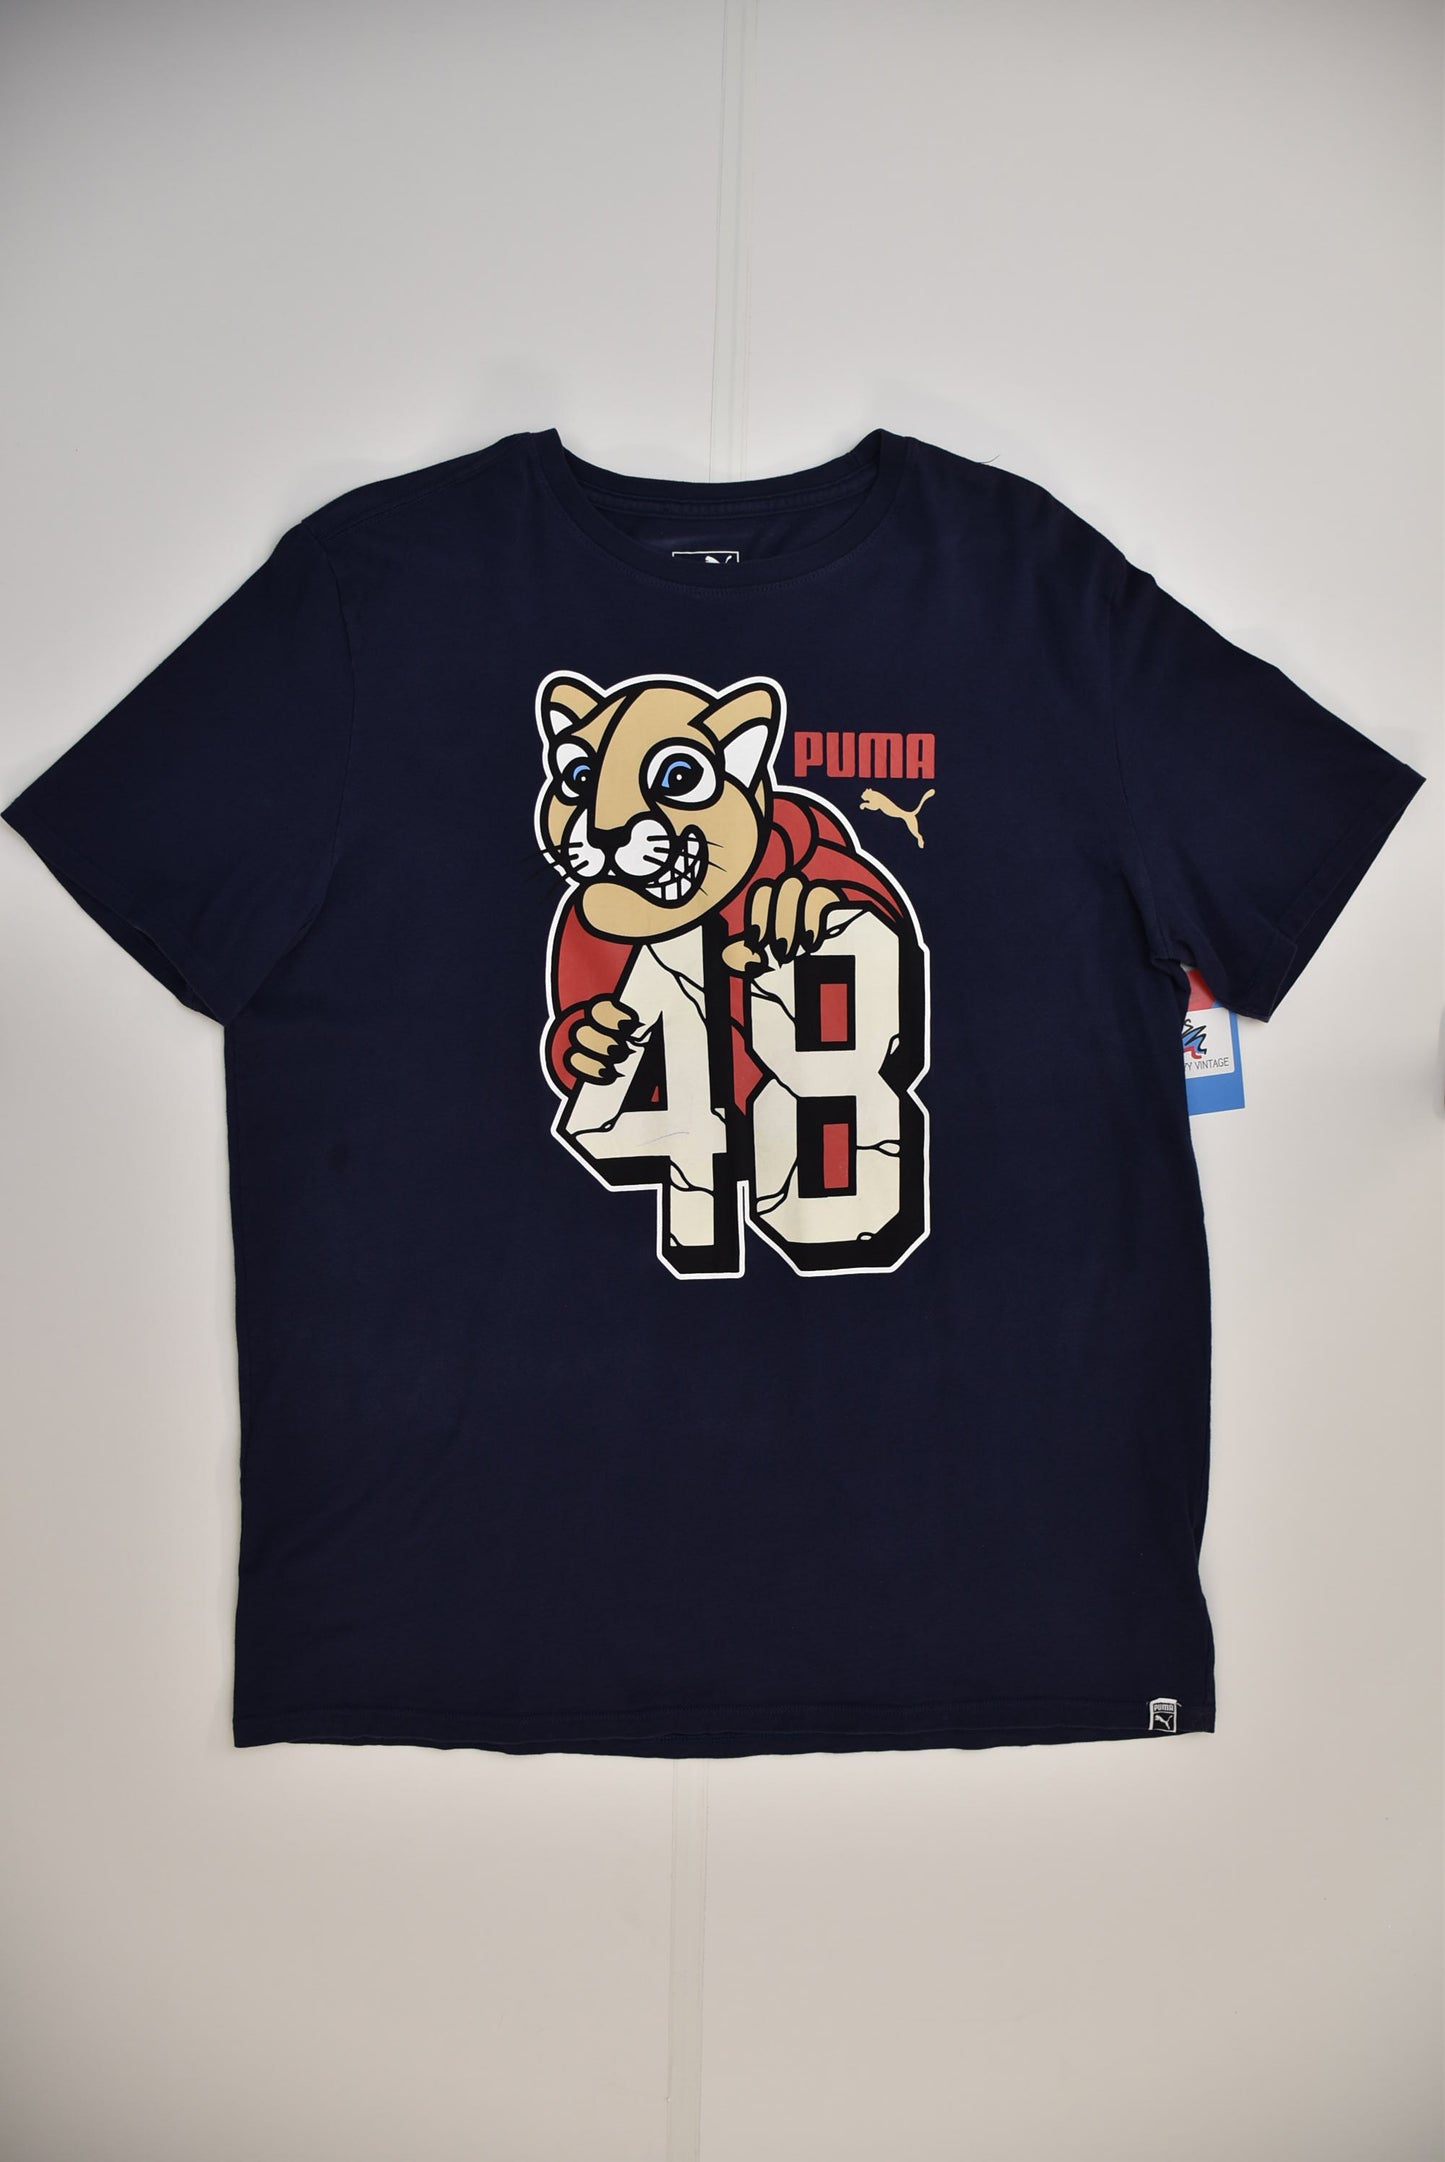 Puma T-shirt (XL)